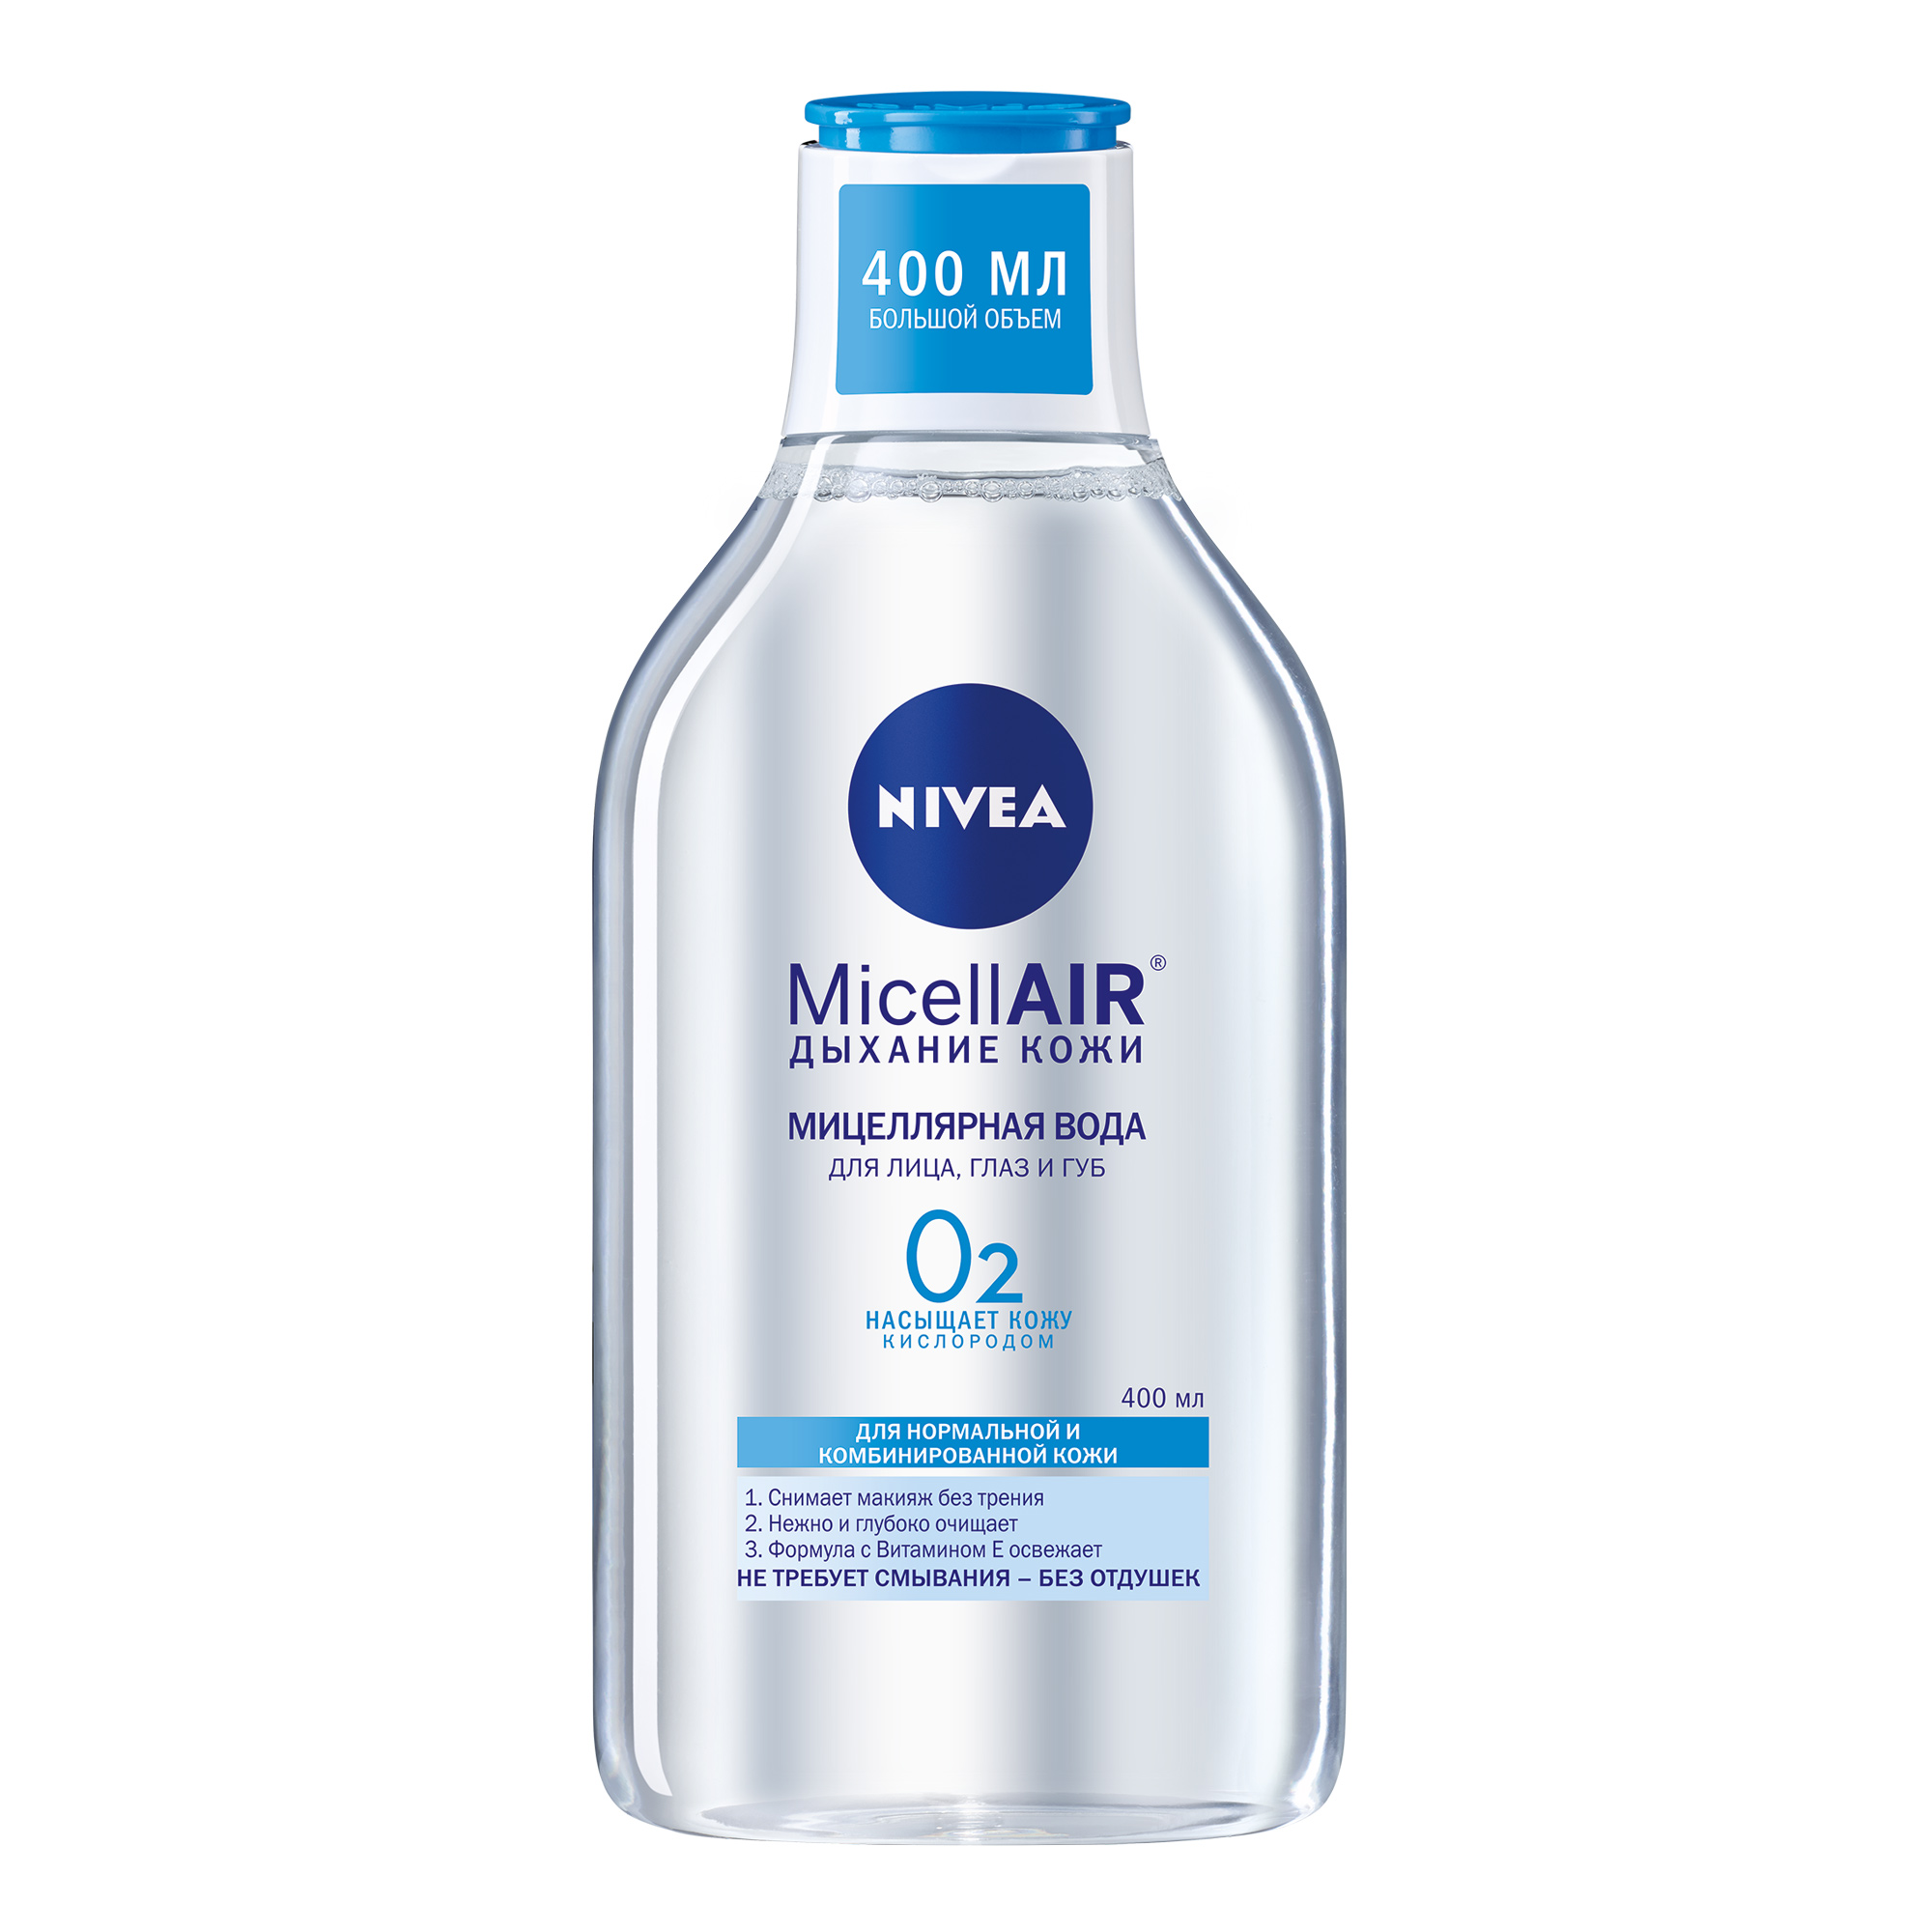 Мицеллярная вода Nivea MicellAIR Дыхание кожи для нормальной и комбинированной кожи 400 мл сыворотка бустер для нормальной и комбинированной кожи 20мл